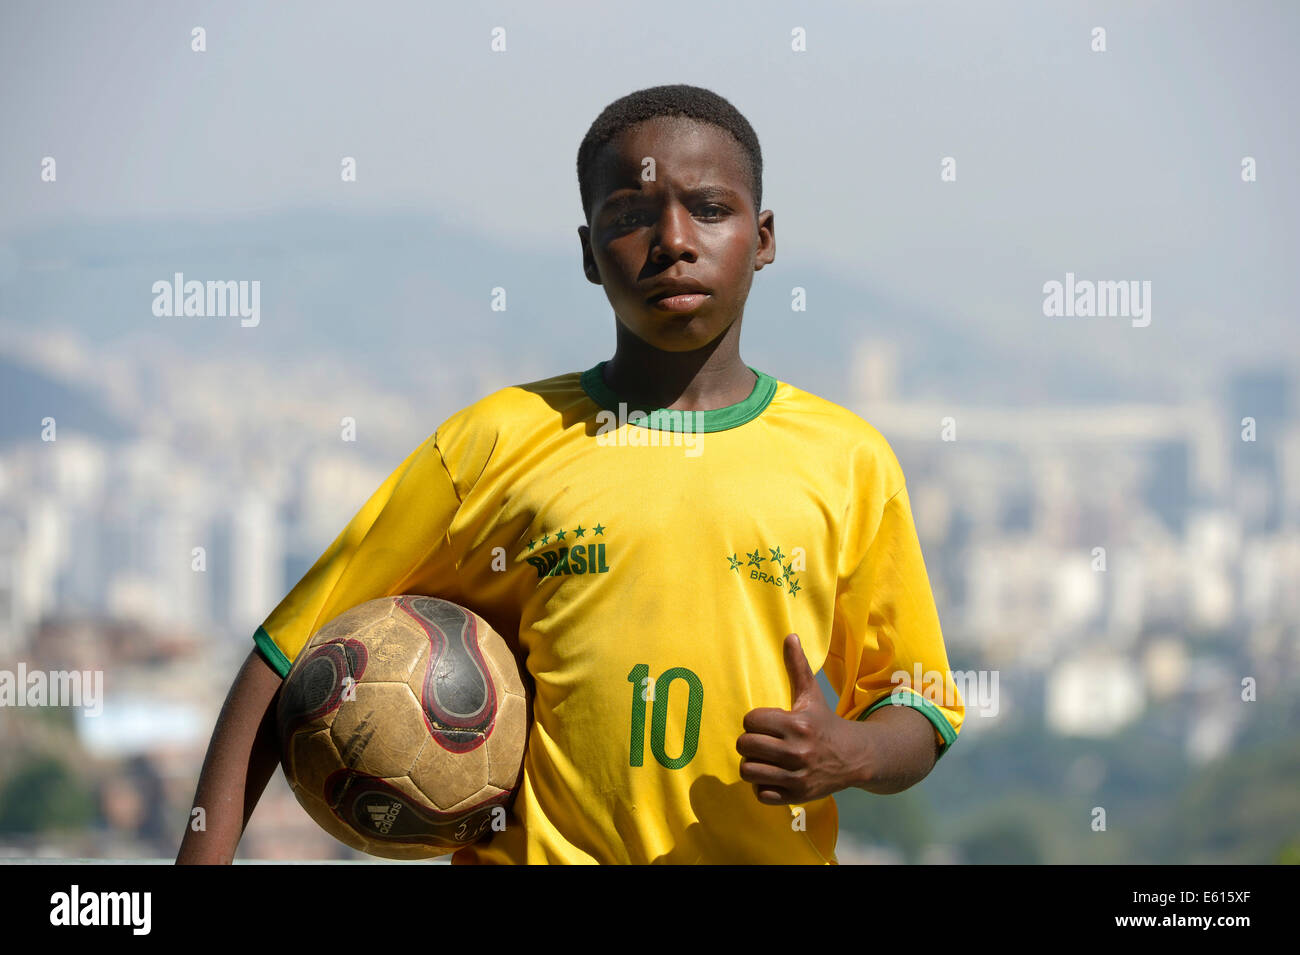 Junge, 13 Jahre, tragen das Trikot der brasilianischen Nationalmannschaft, hält einen Fußball, Rio De Janeiro, Brasilien Stockfoto